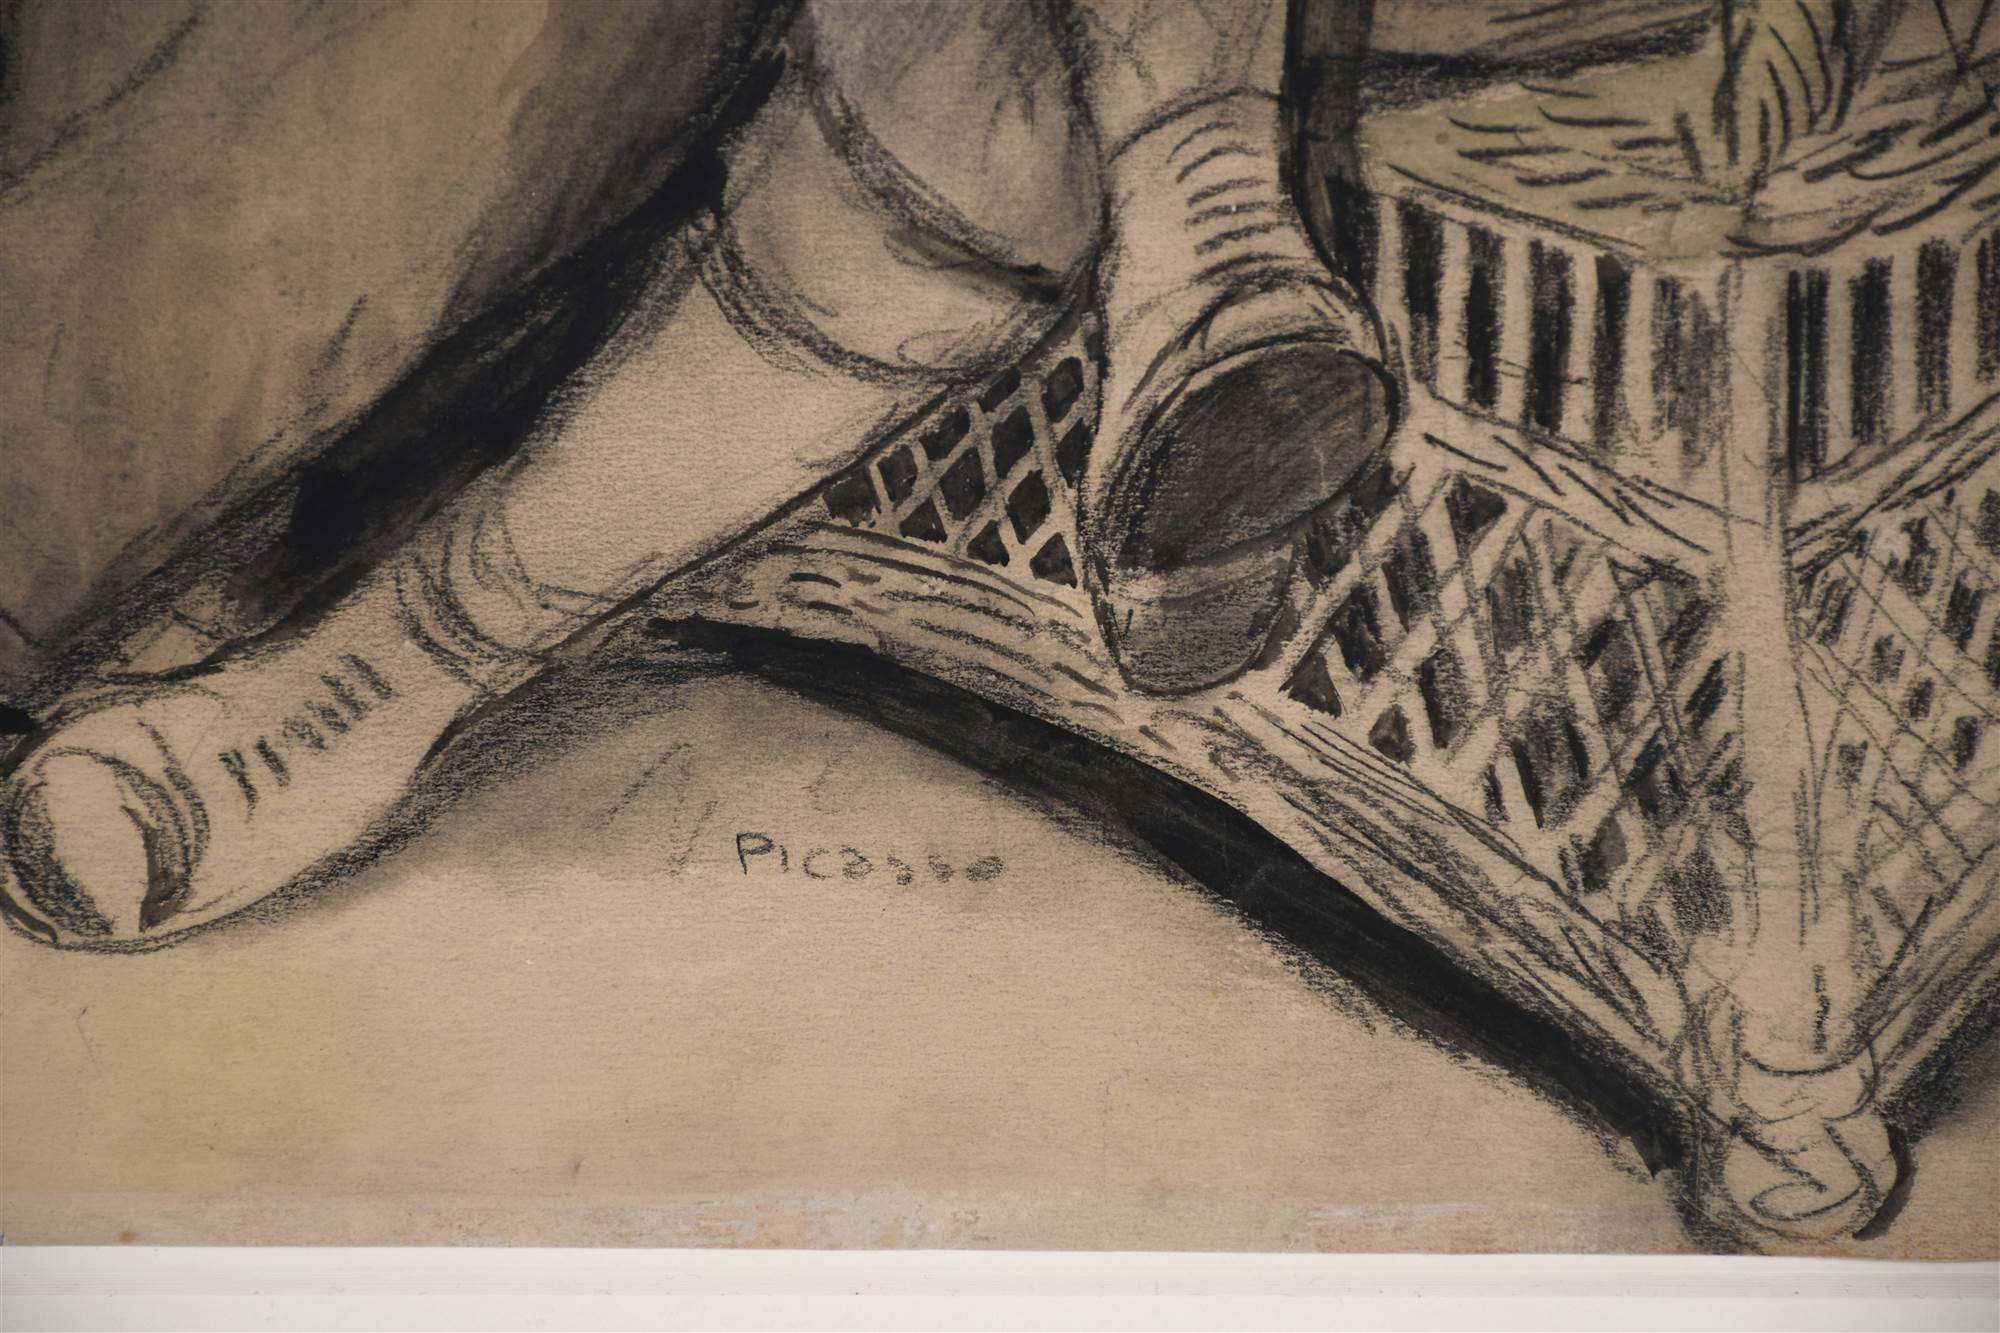 RICARD OPISSO (1880-1966). "PICASSO Y AMIGOS", 1902, París.